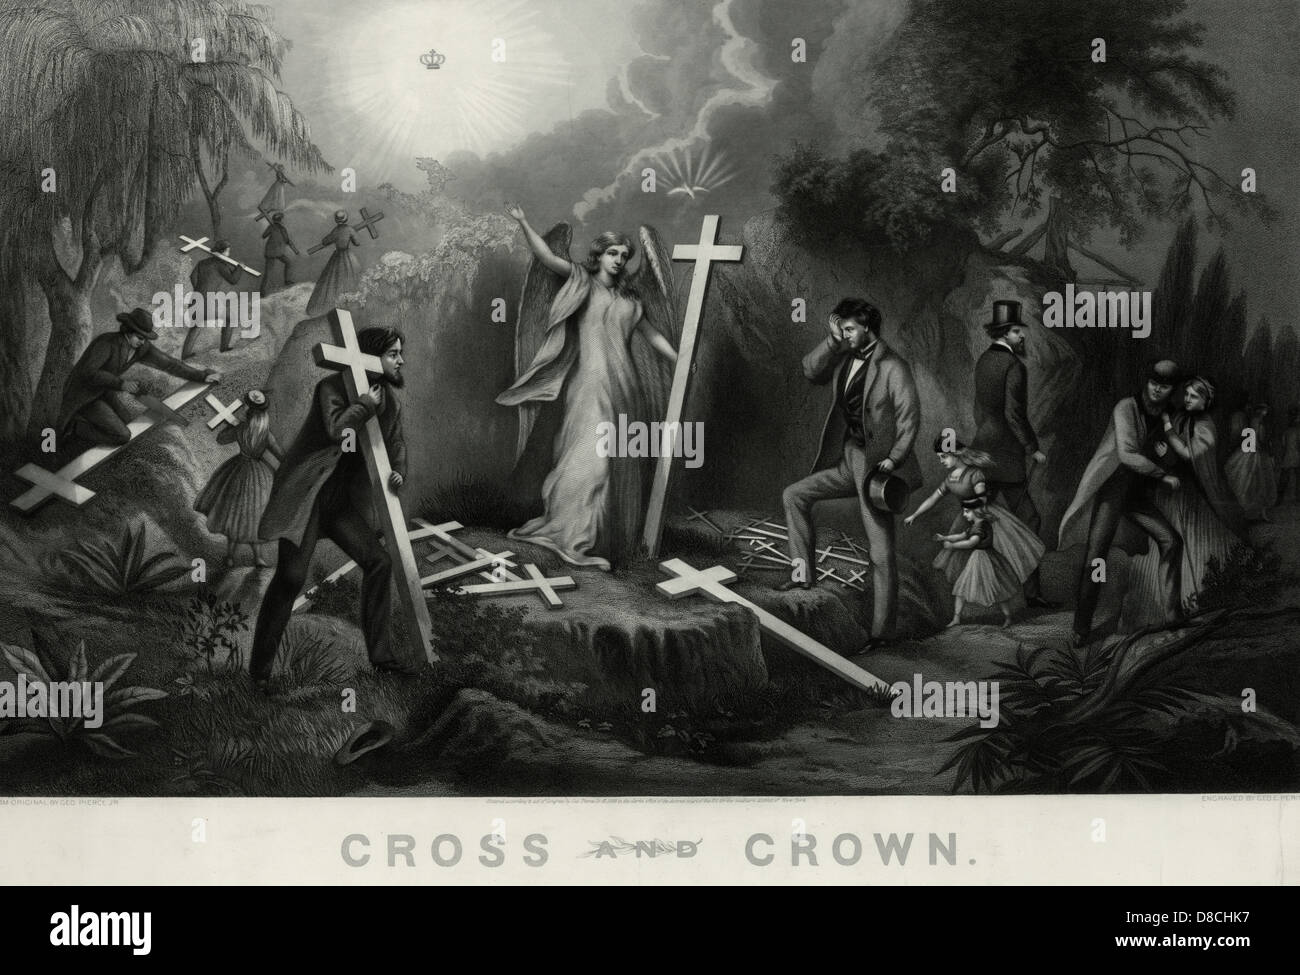 Croce e corona - un angelo consegna croci alle persone da trasportare. Foto Stock